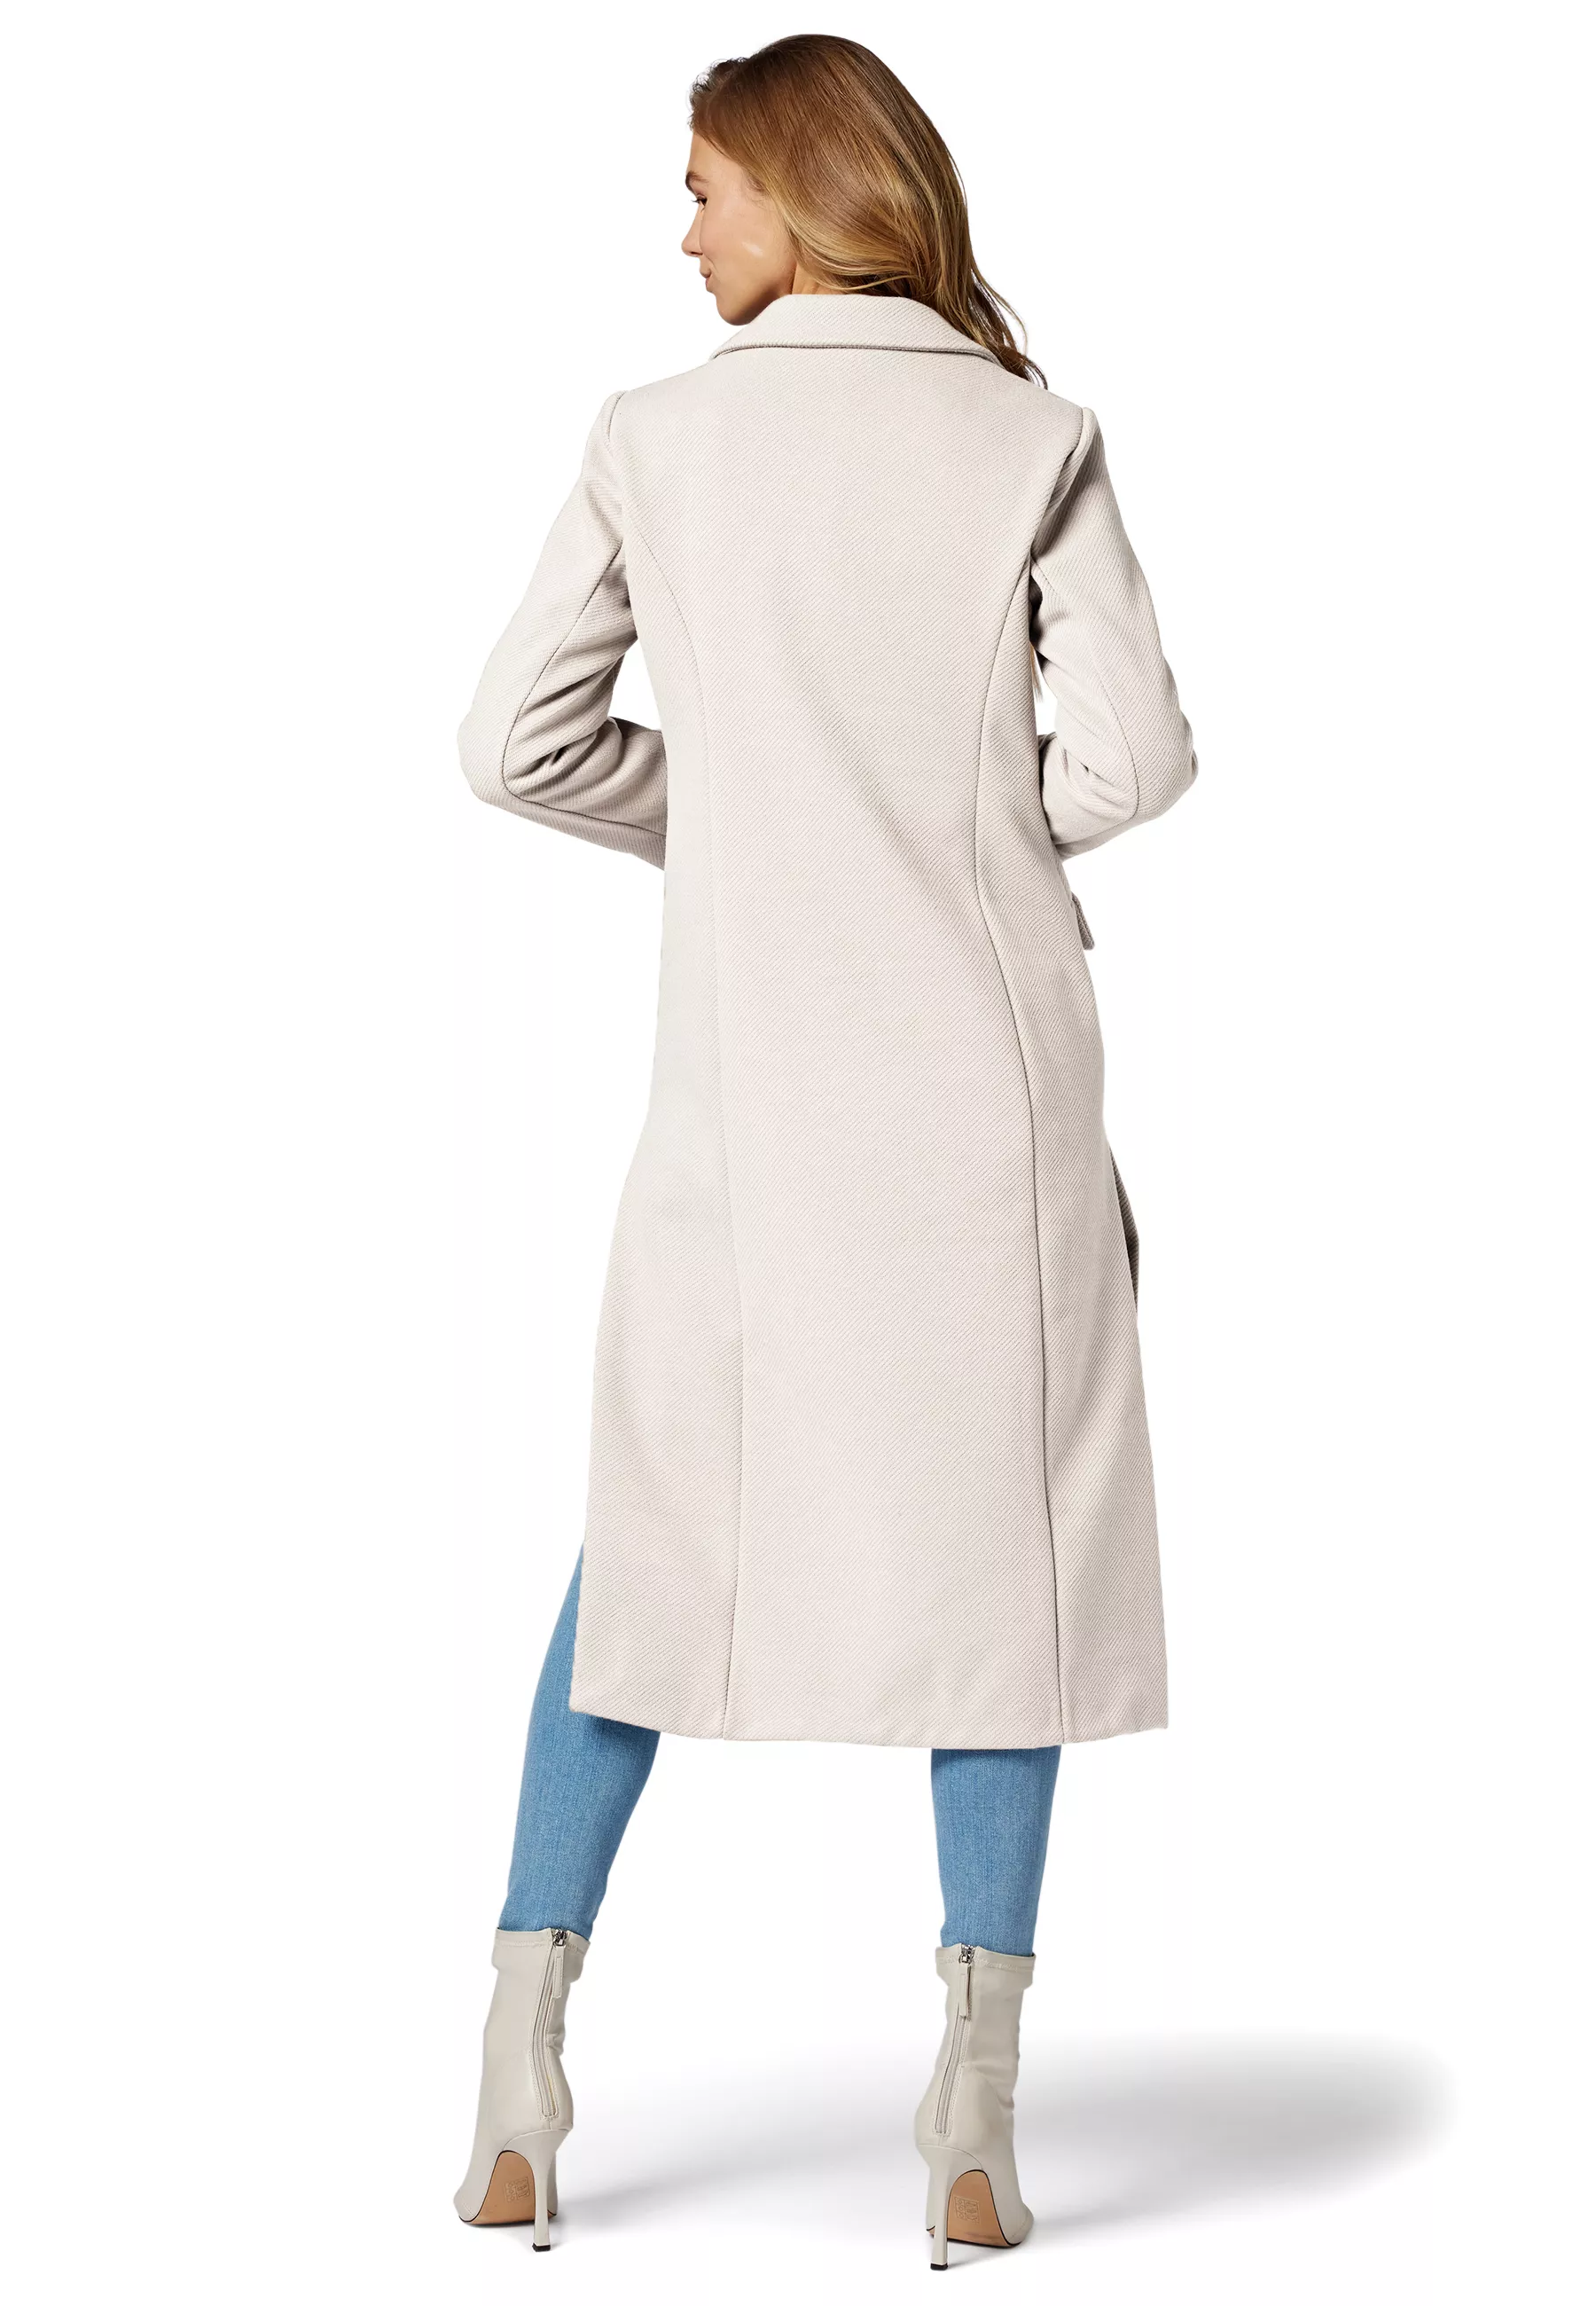 Damen Mantel Grazia in Weiß von Ricano, Rückansicht am Model